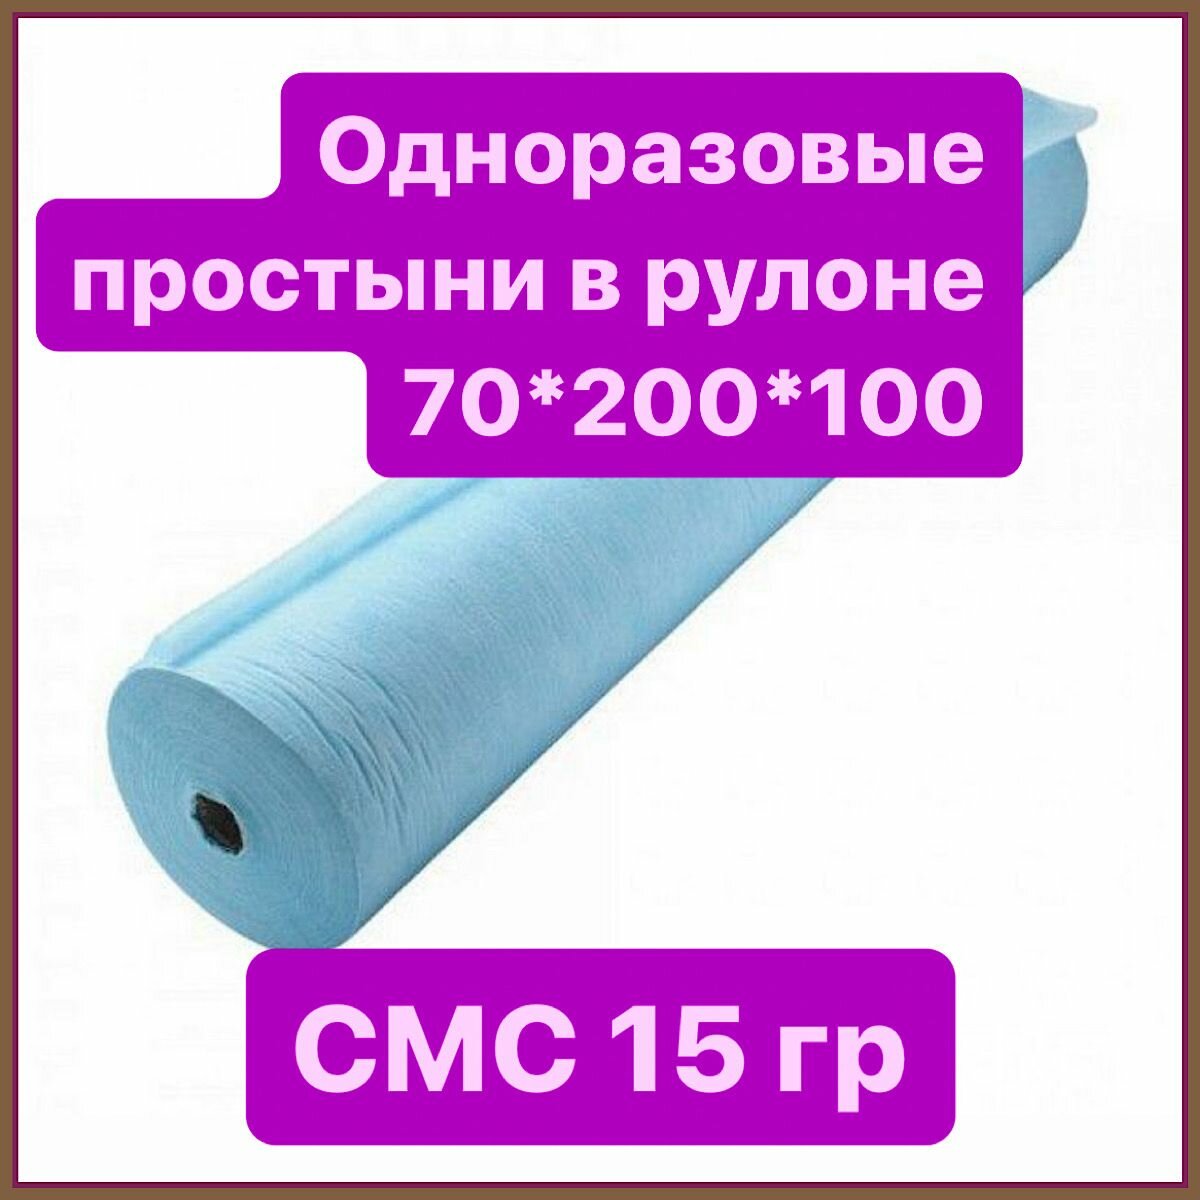 Одноразовые простыни в рулоне с перфорацией/одноразовые простыни для массажа 70*200*100 голубые